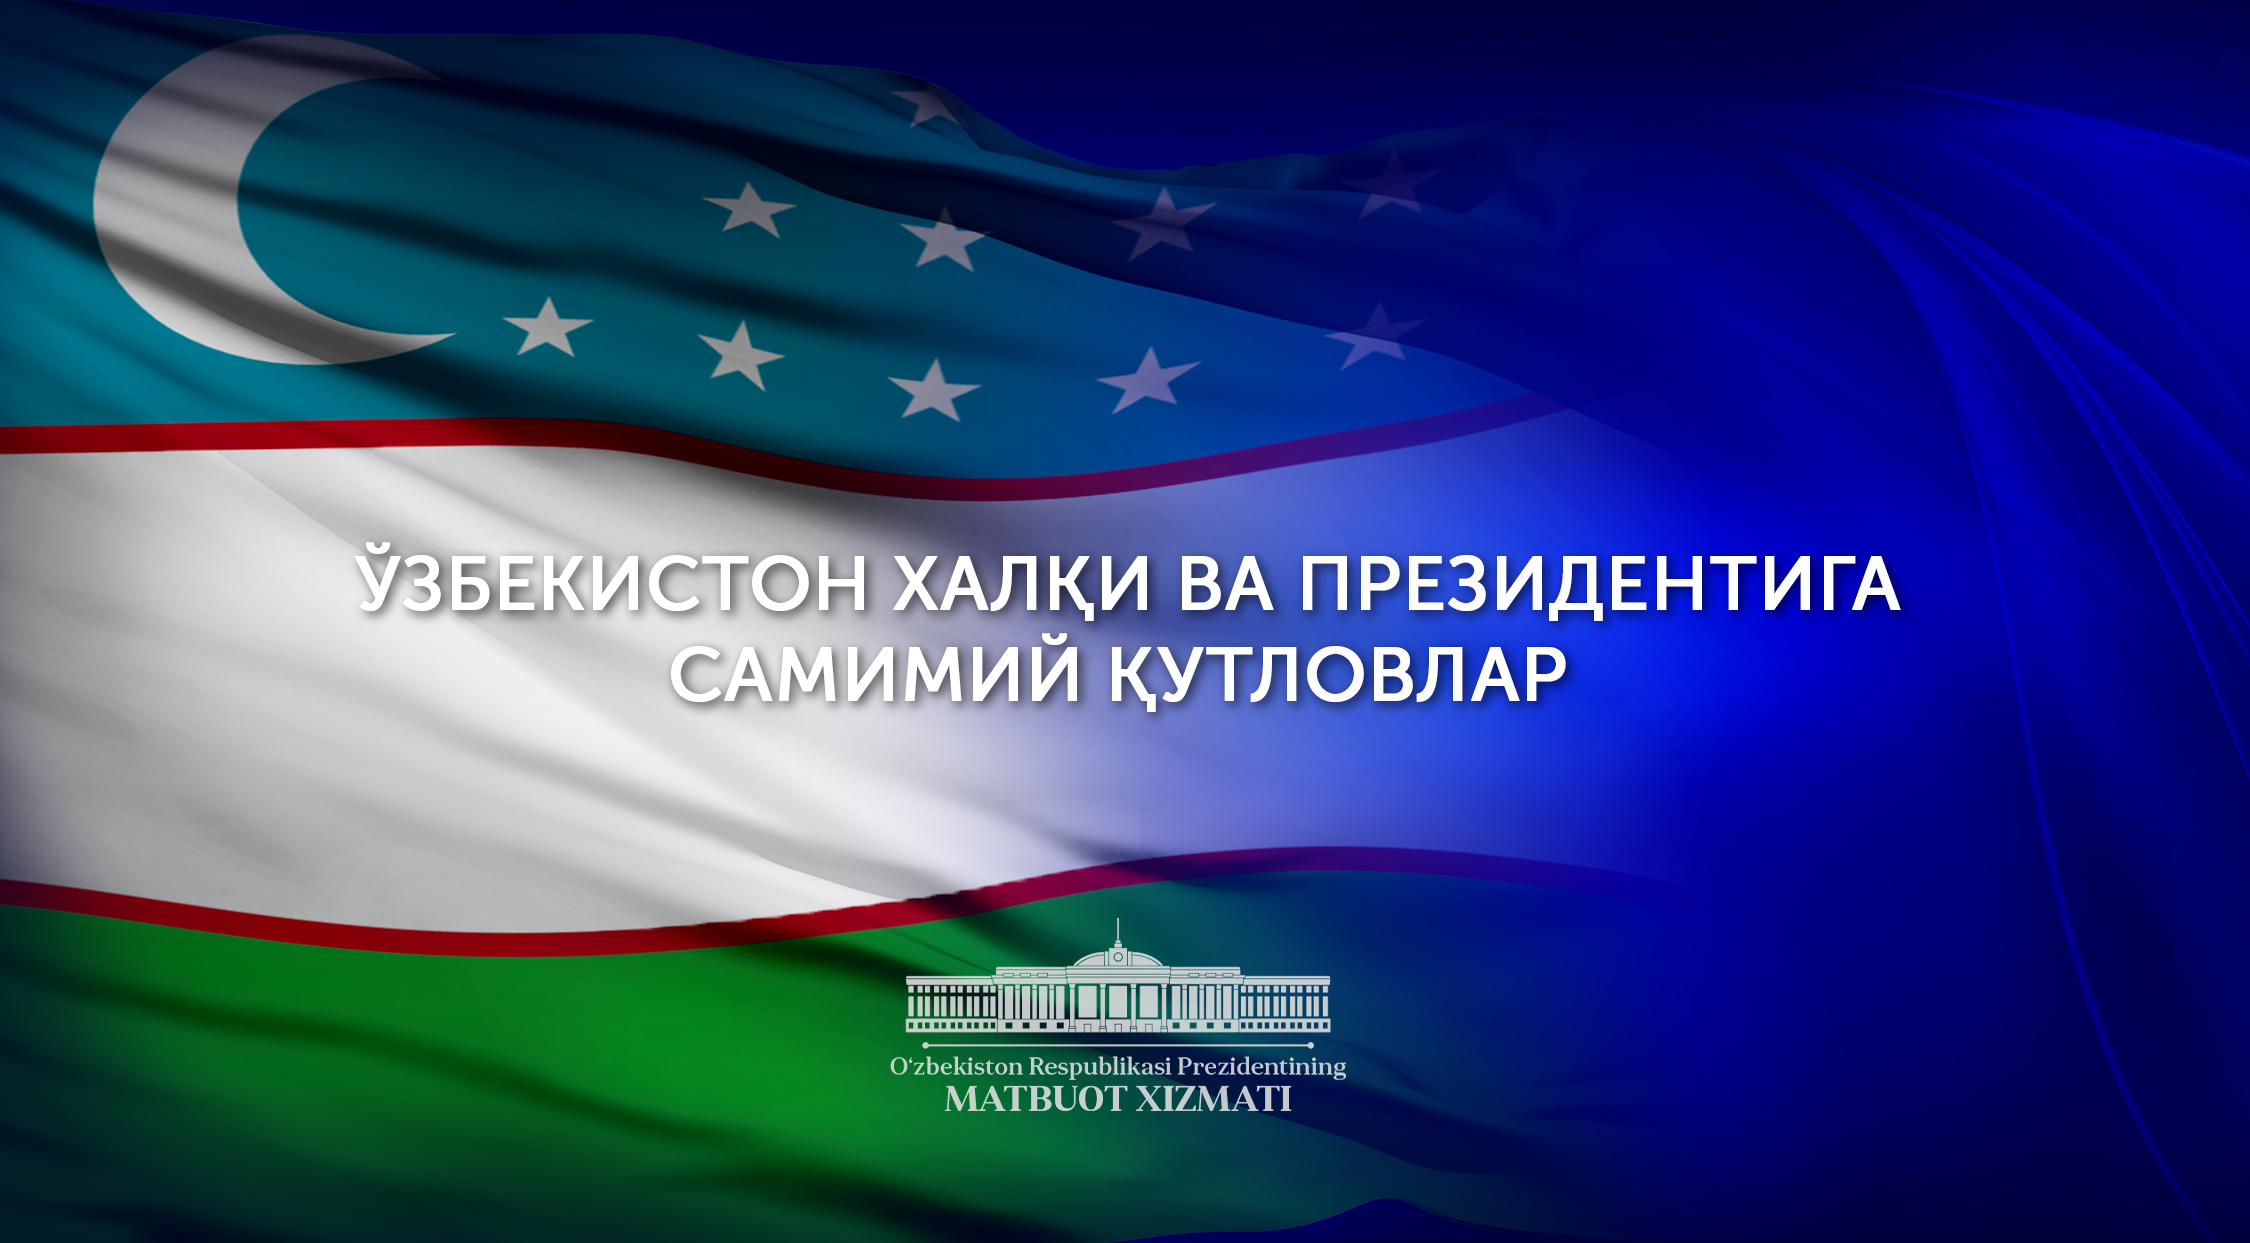 Поздравления на имя Президента Шавката Мирзиёева